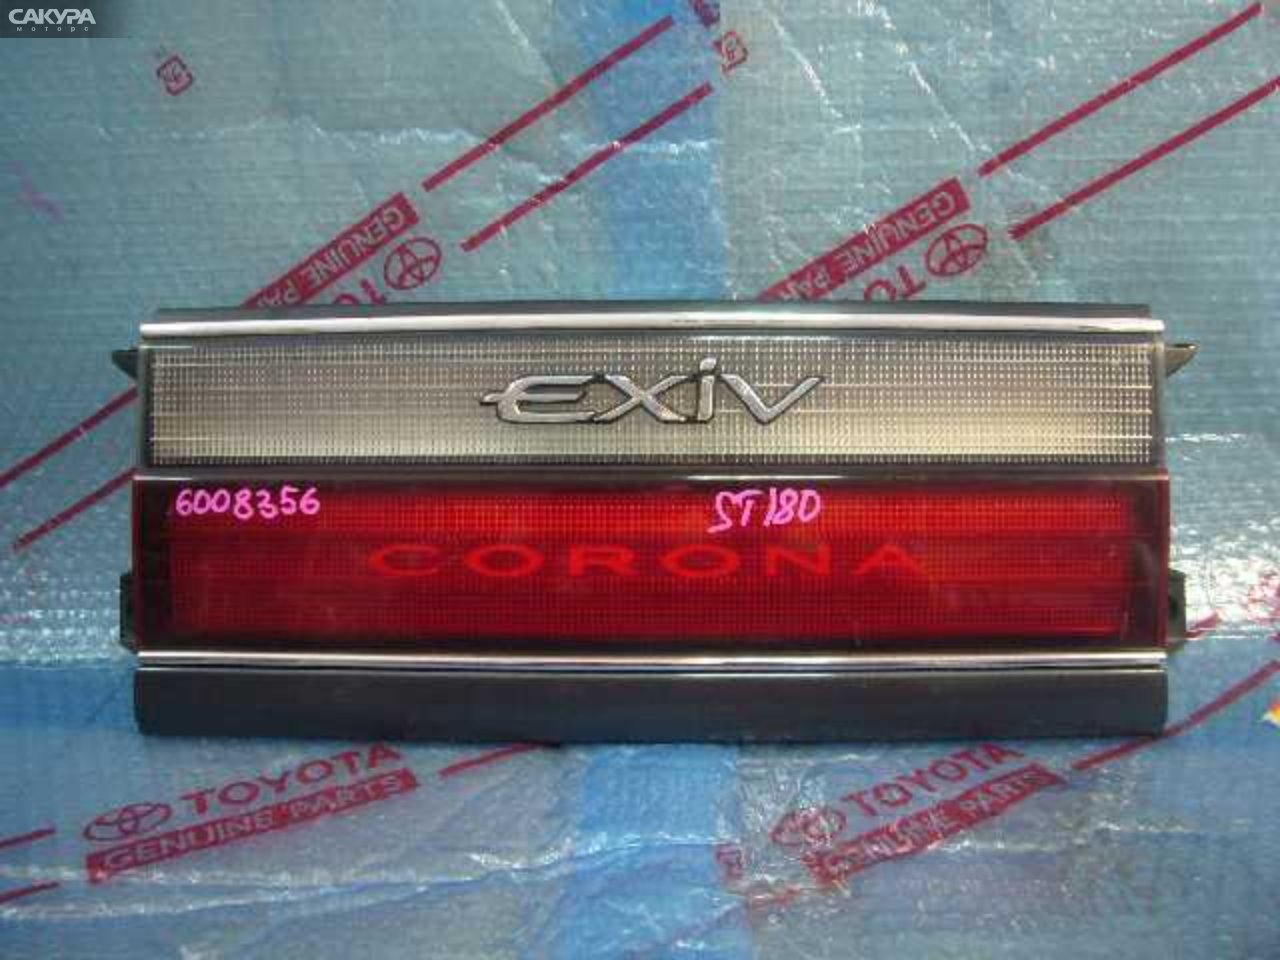 Фонарь вставка багажника Toyota Corona Exiv ST180: купить в Сакура Кемерово.